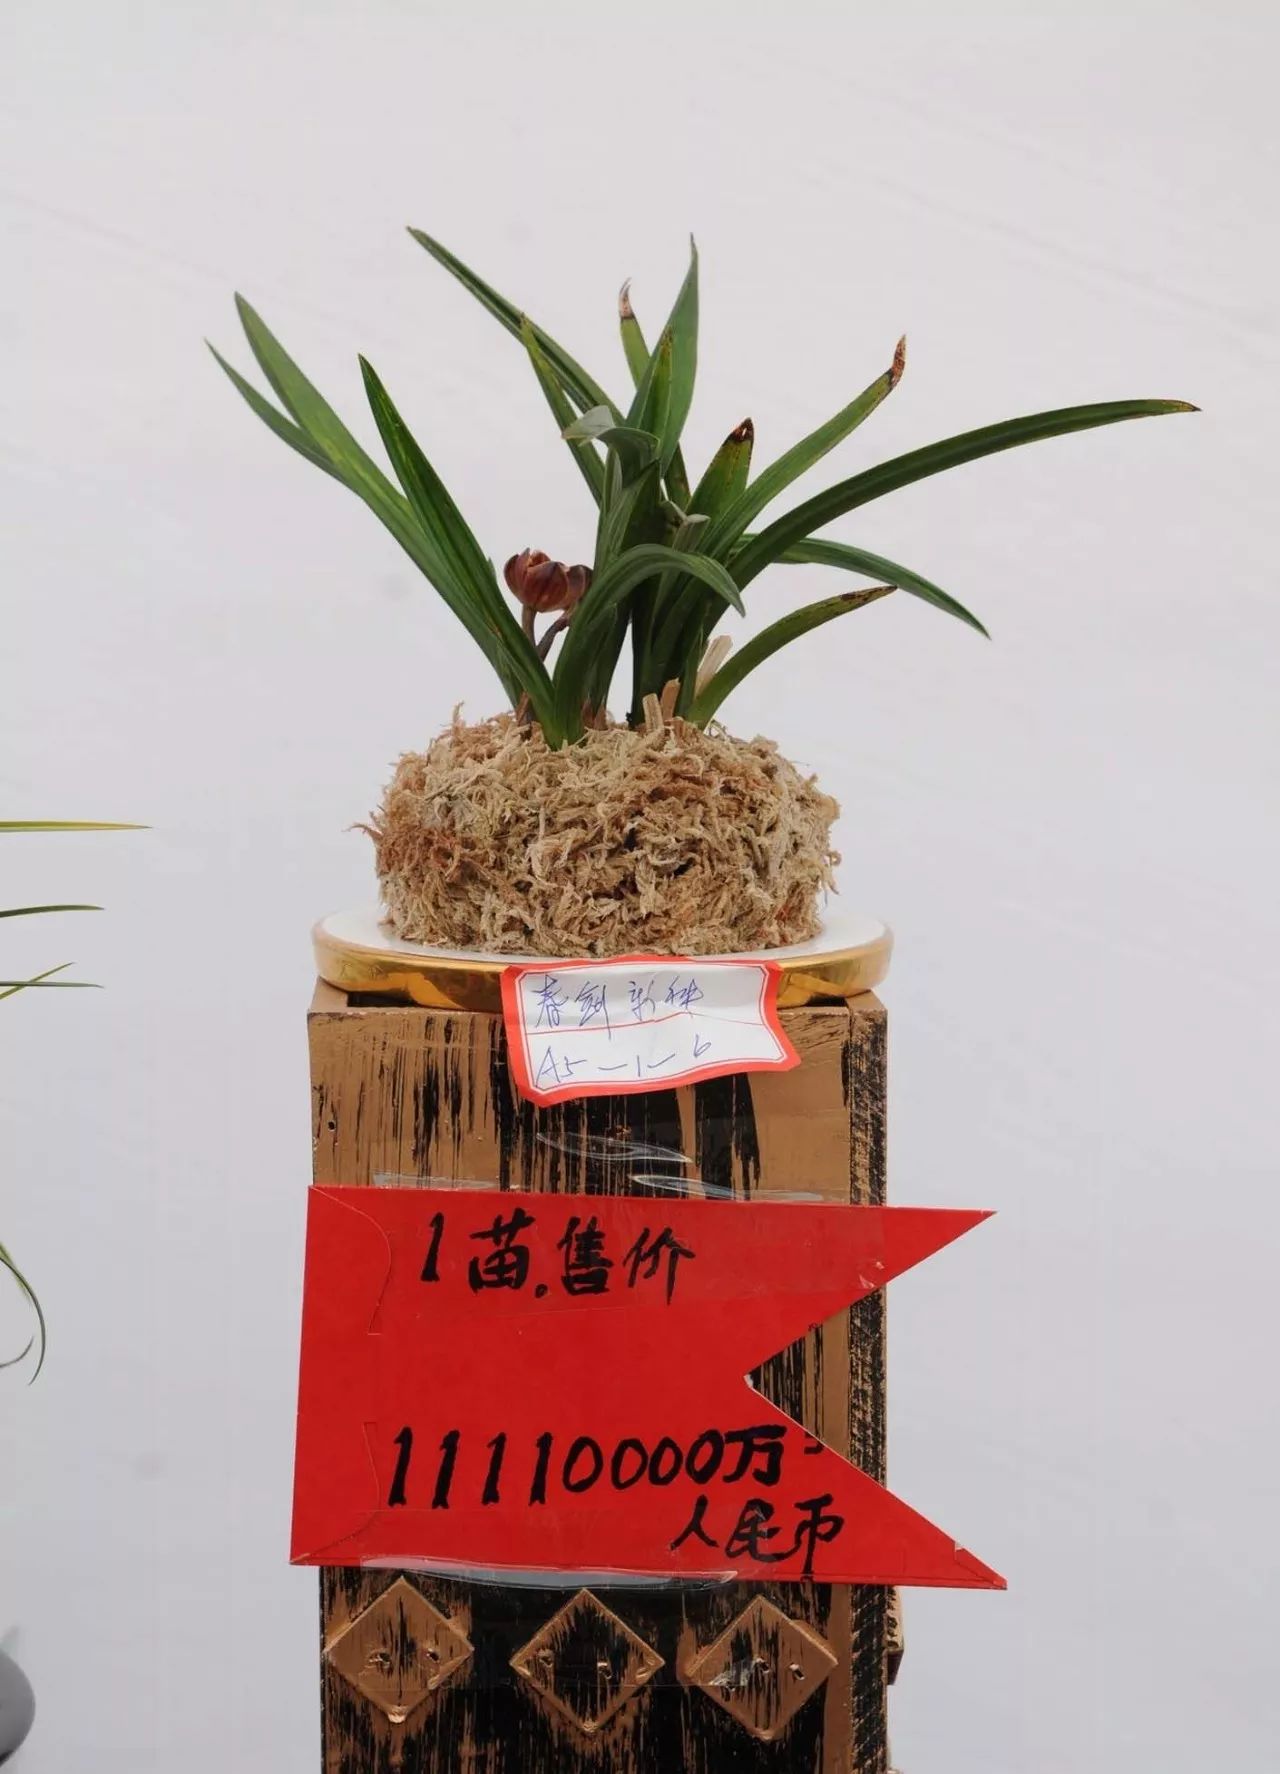 兰花博览会上,一株来自云南省大理,名为"素冠荷鼎"的莲瓣兰被估价1500